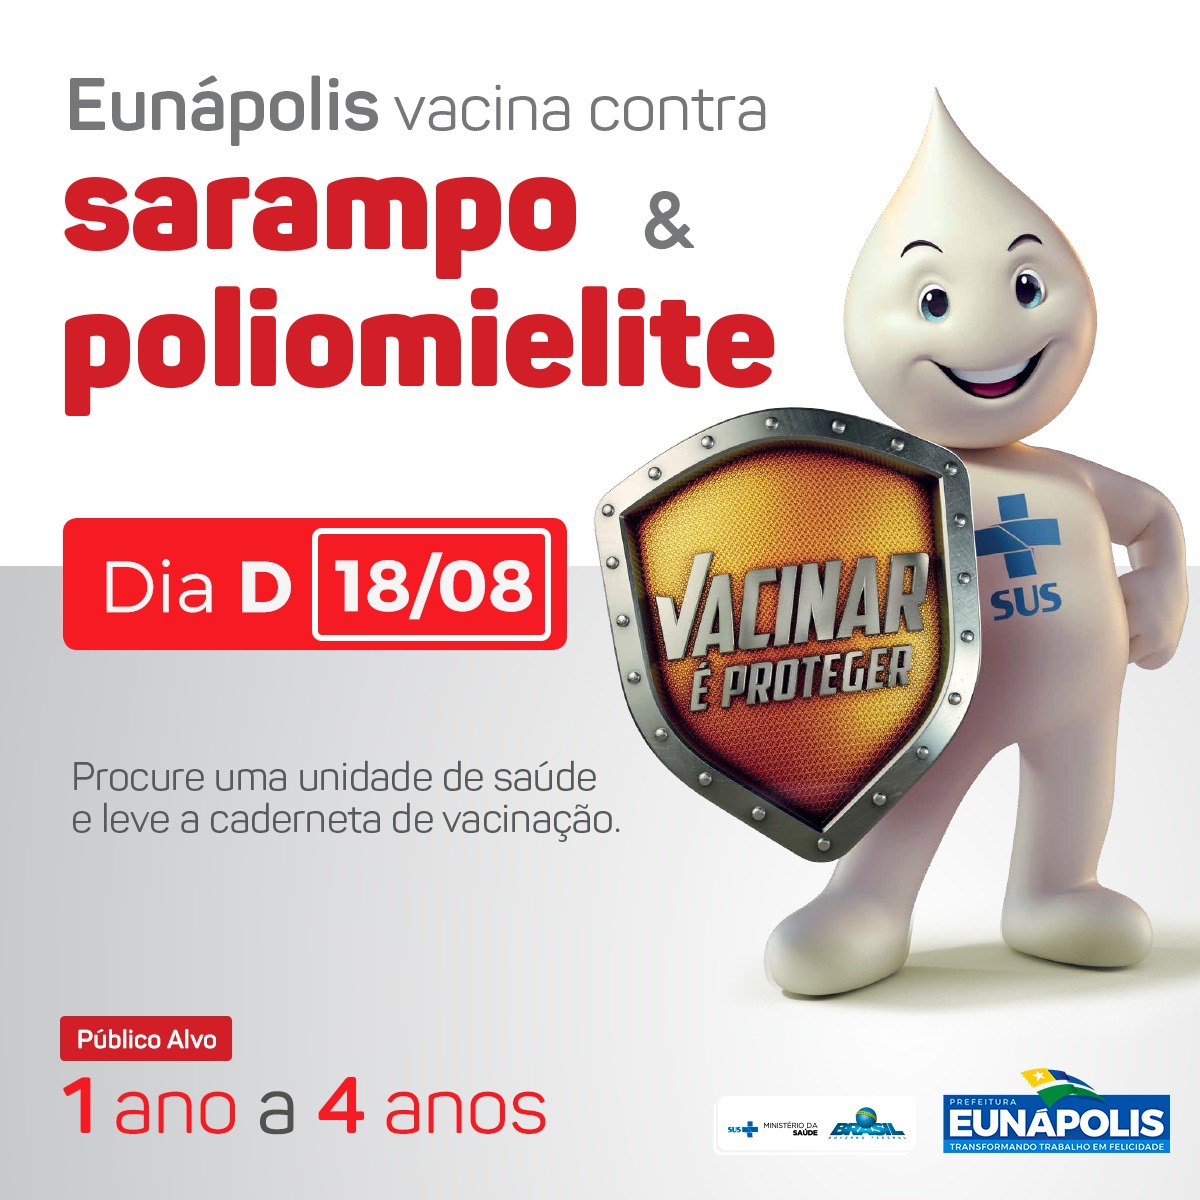 Eunápolis realiza Dia D de Vacinação contra sarampo e poliomielite neste sábado (18/08) 5